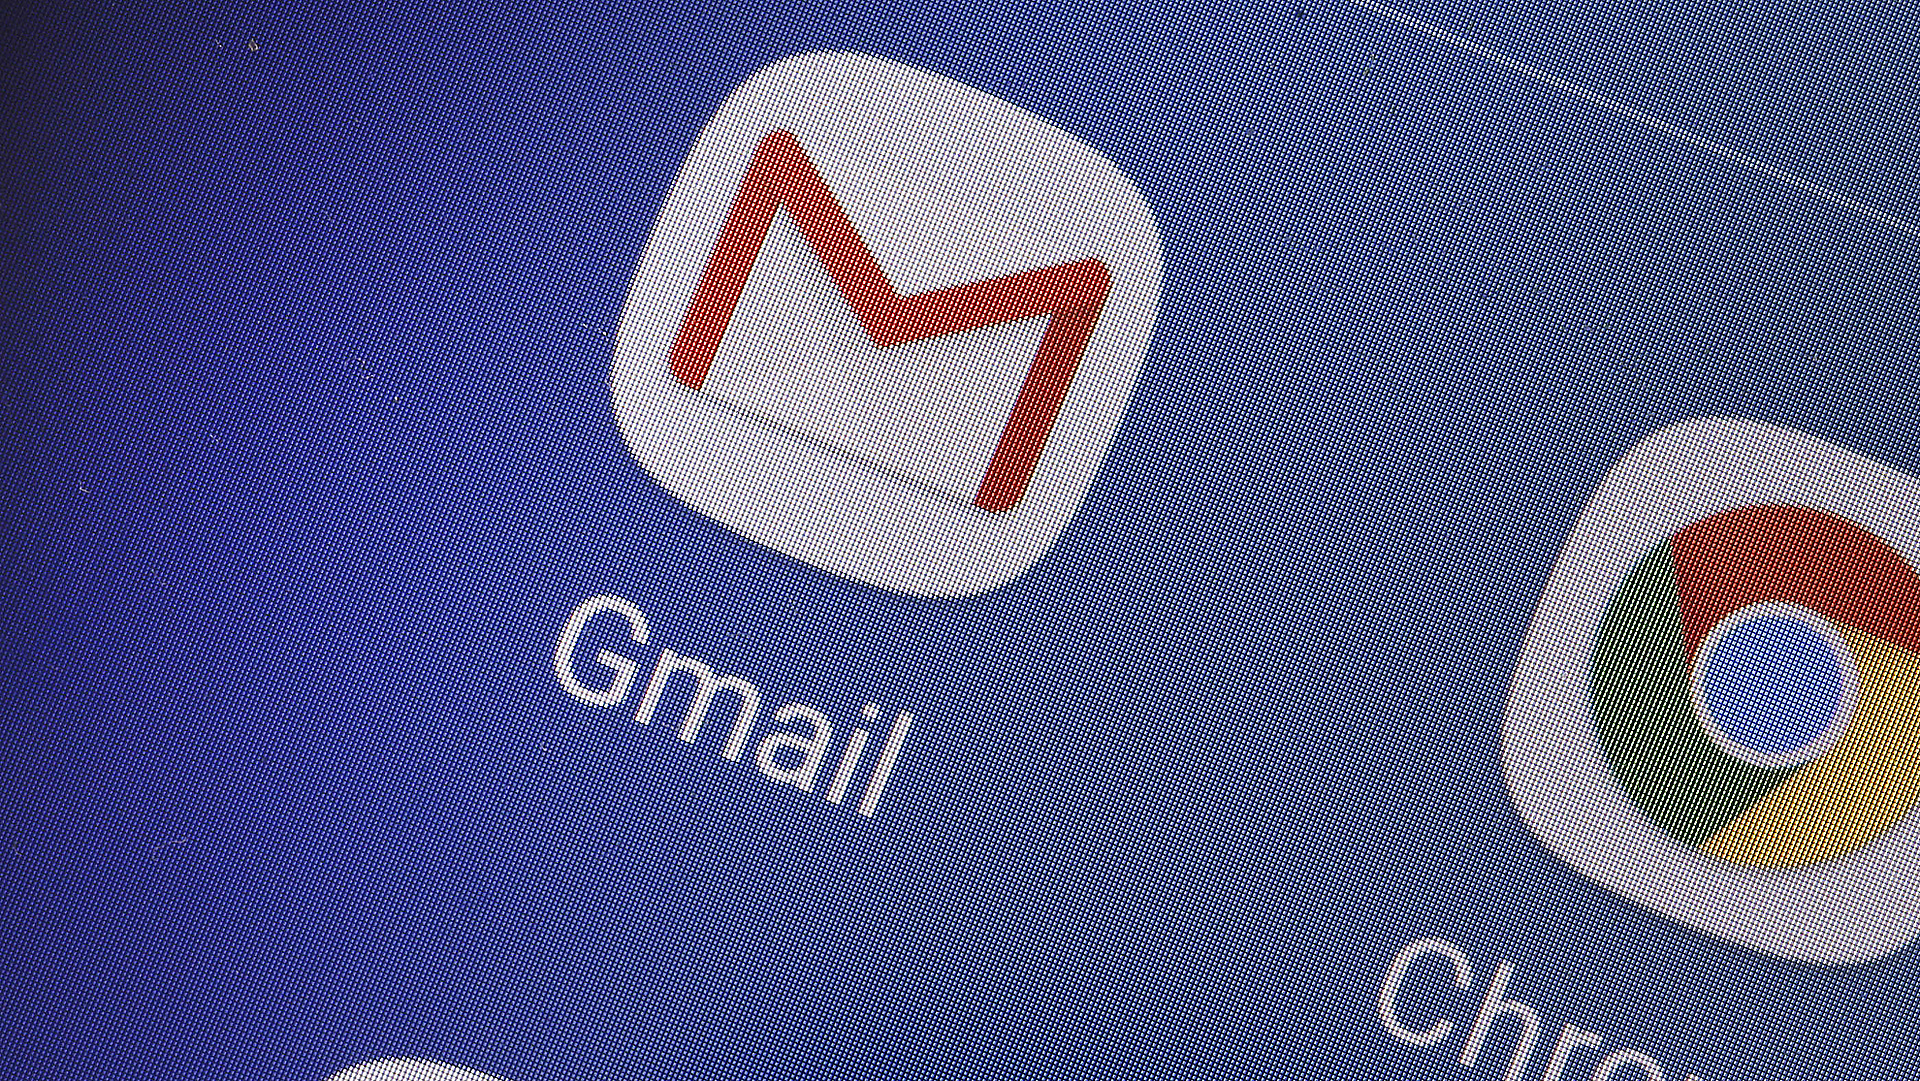 Átalakul a Gmail, listába szedték a változásokat